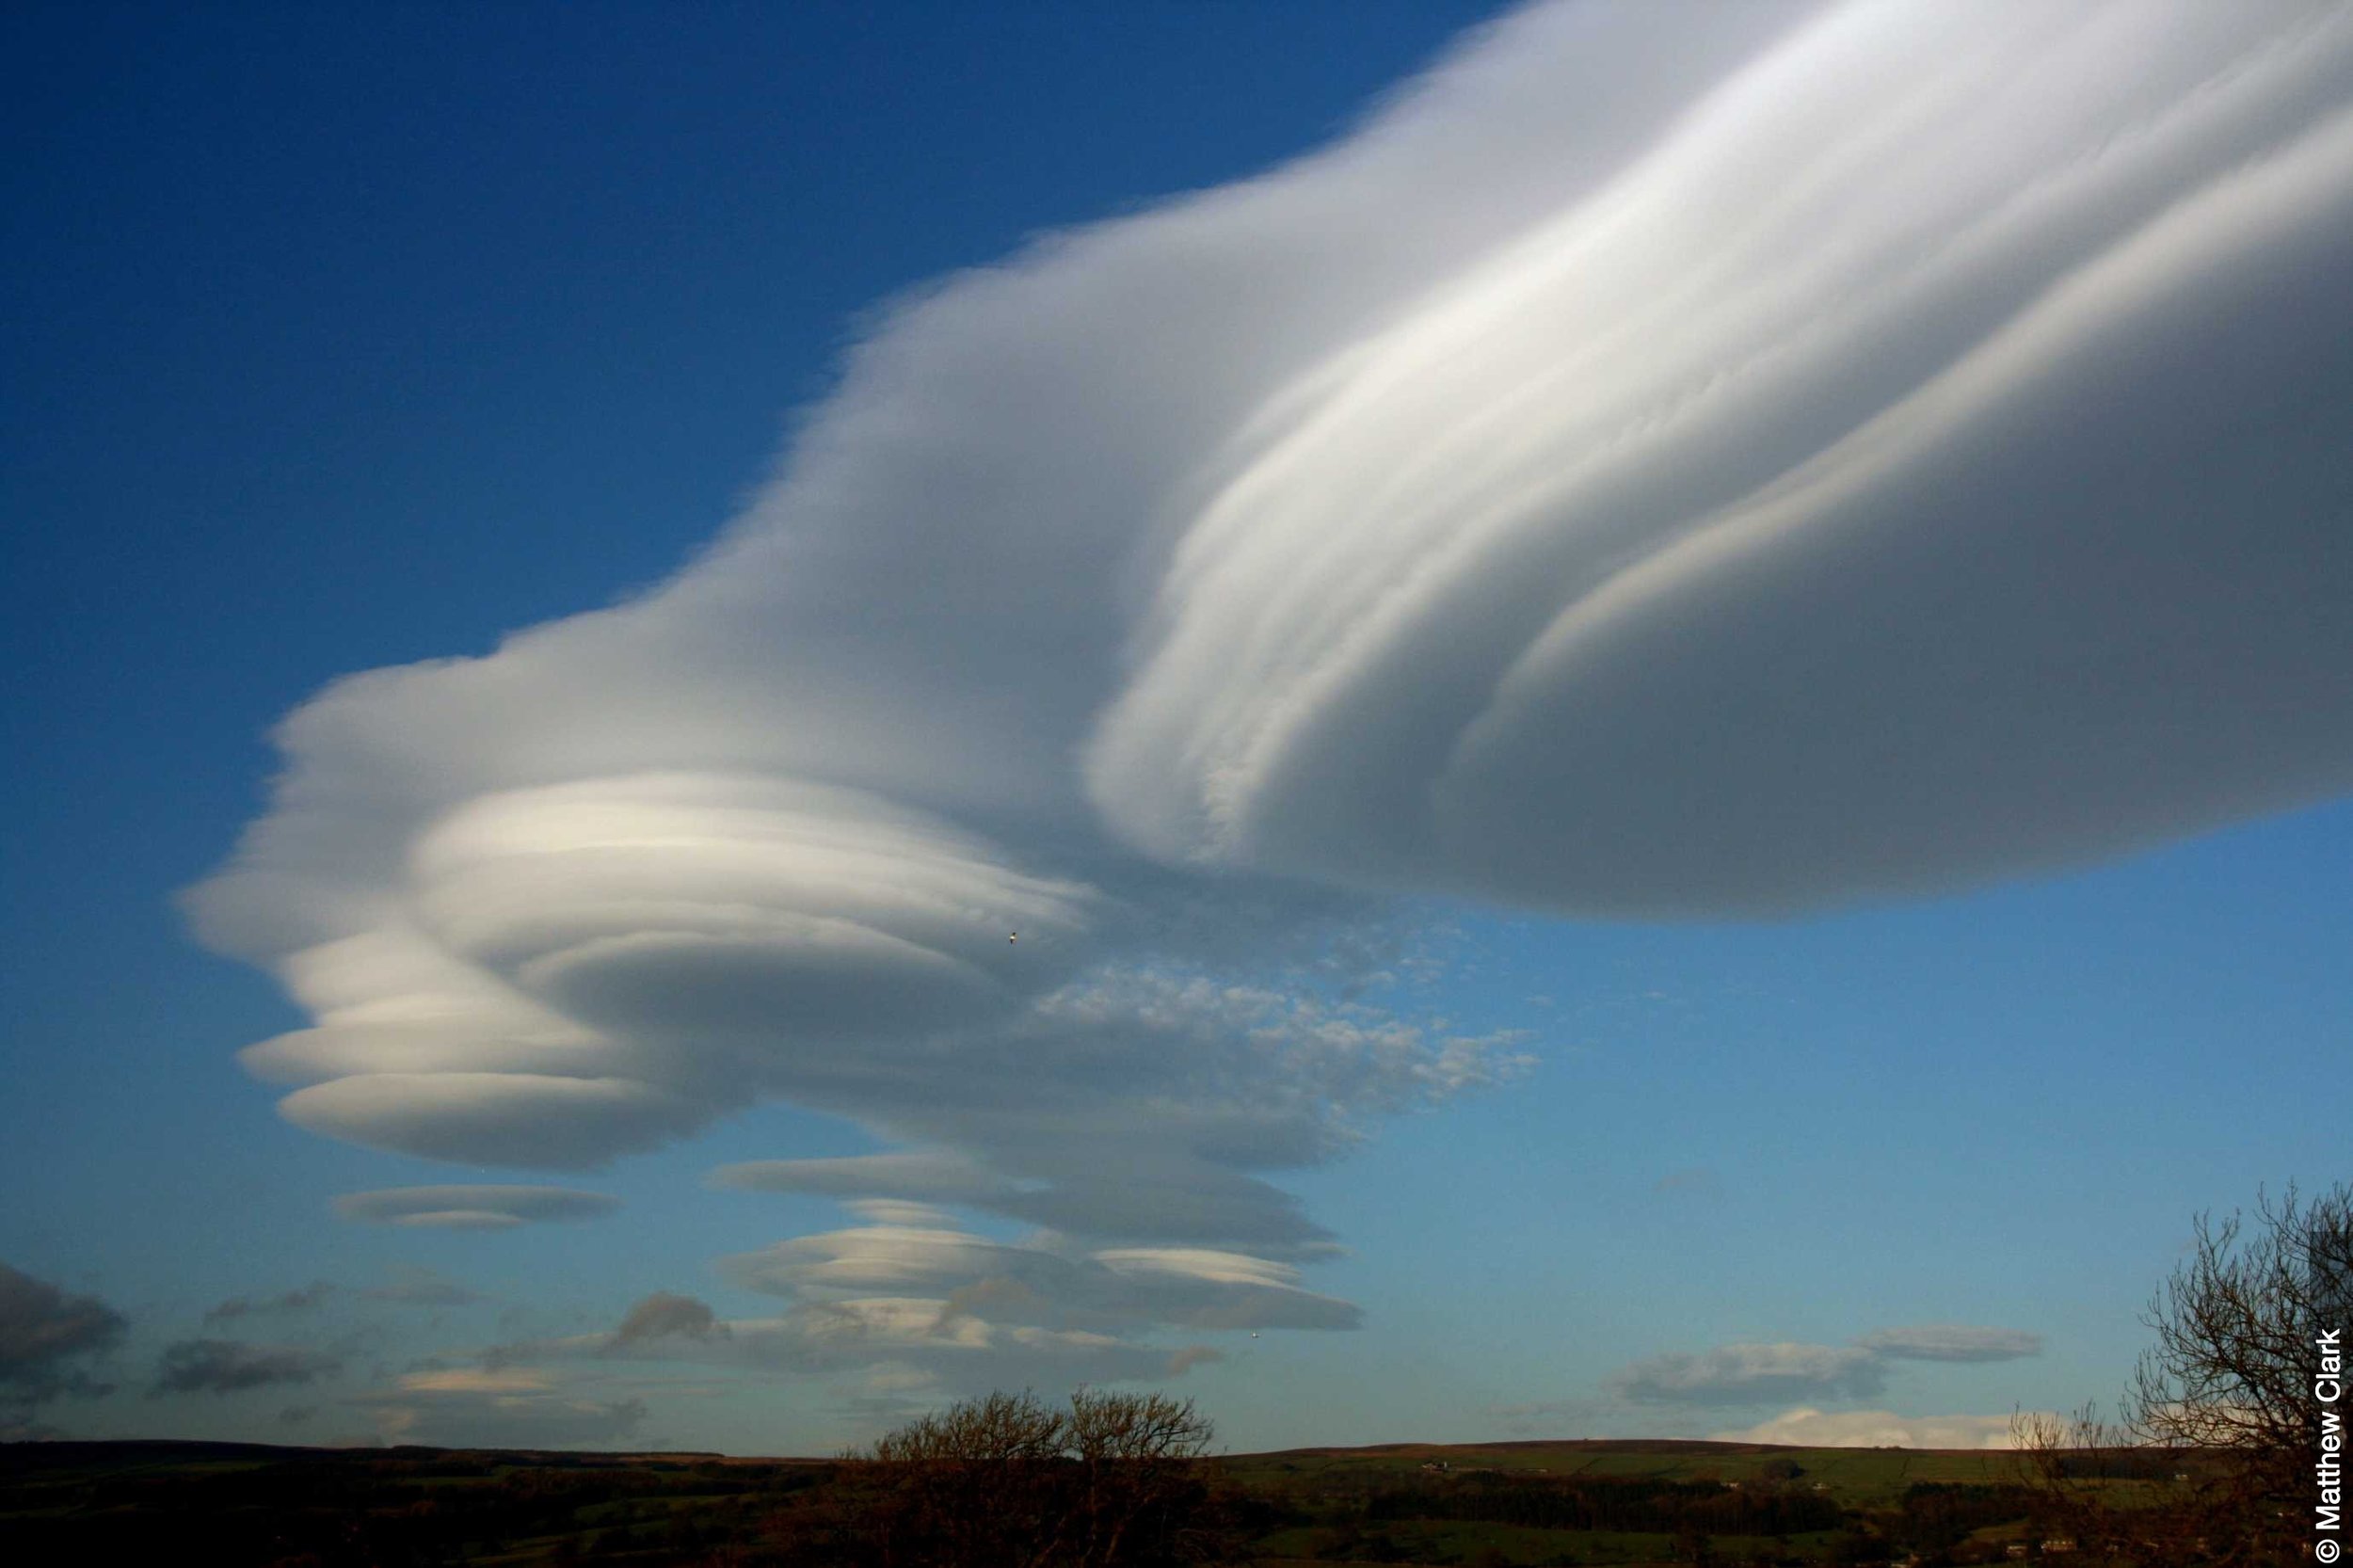   摄影师：Sanskrity Sinha   11月2015年   05:26  原网址:https://www.ibtimes.co.uk/ufo-sighting-clouds-looking-like-alien-spaceships-spotted-over-cape-town-1528116 